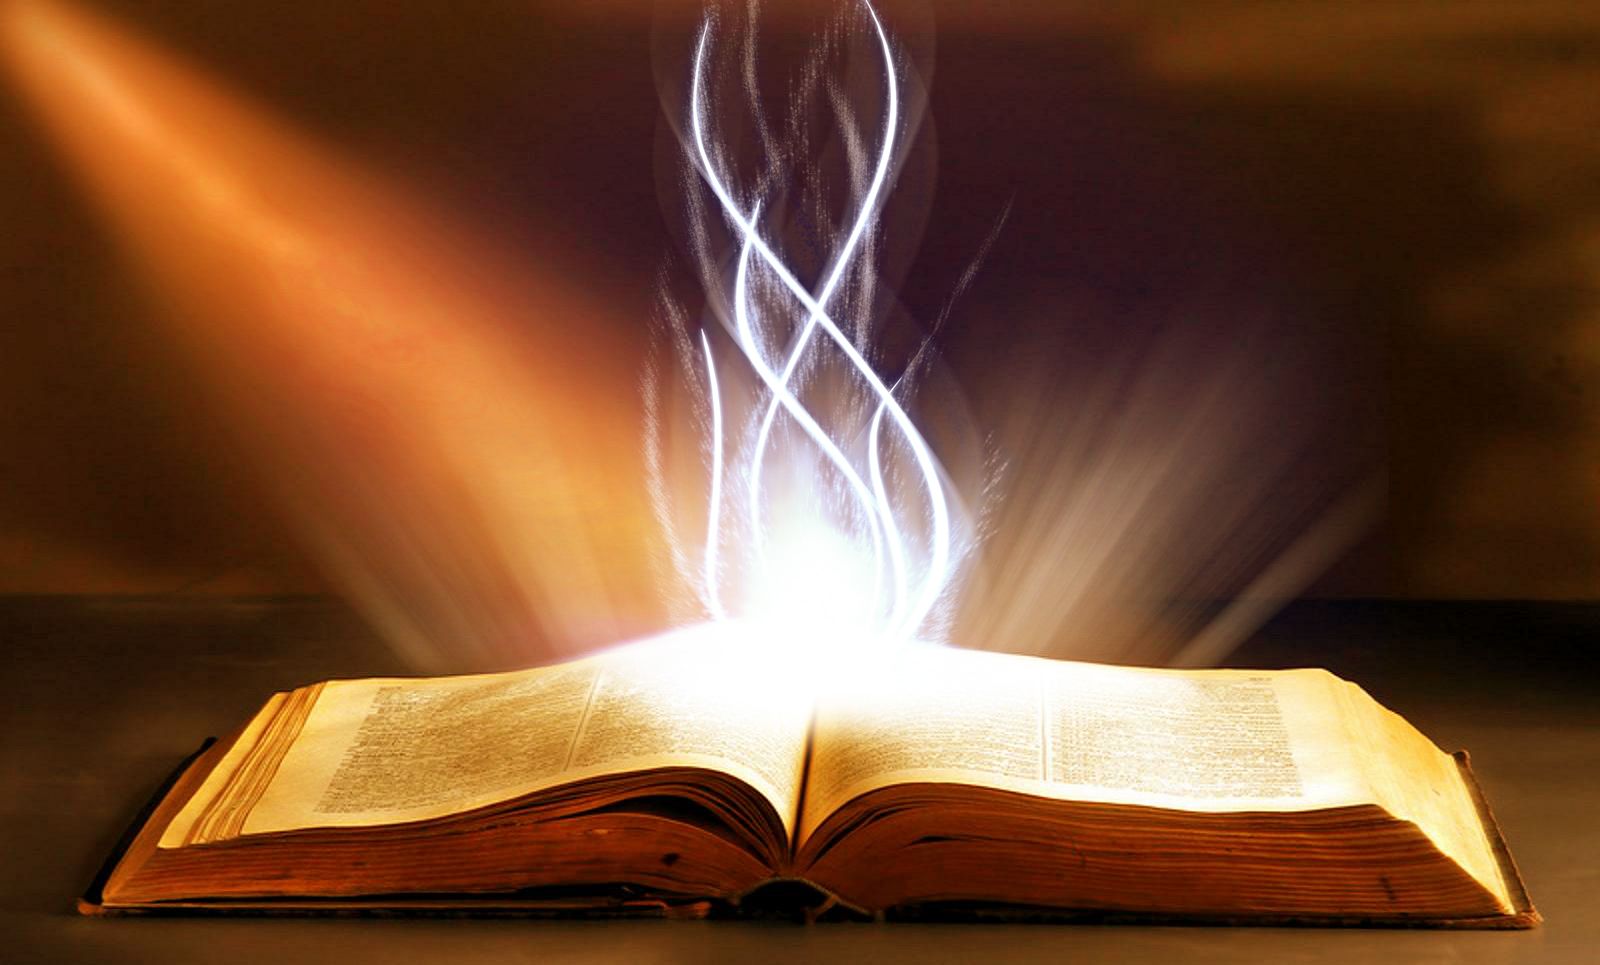 bible-sunlight-fire.jpg